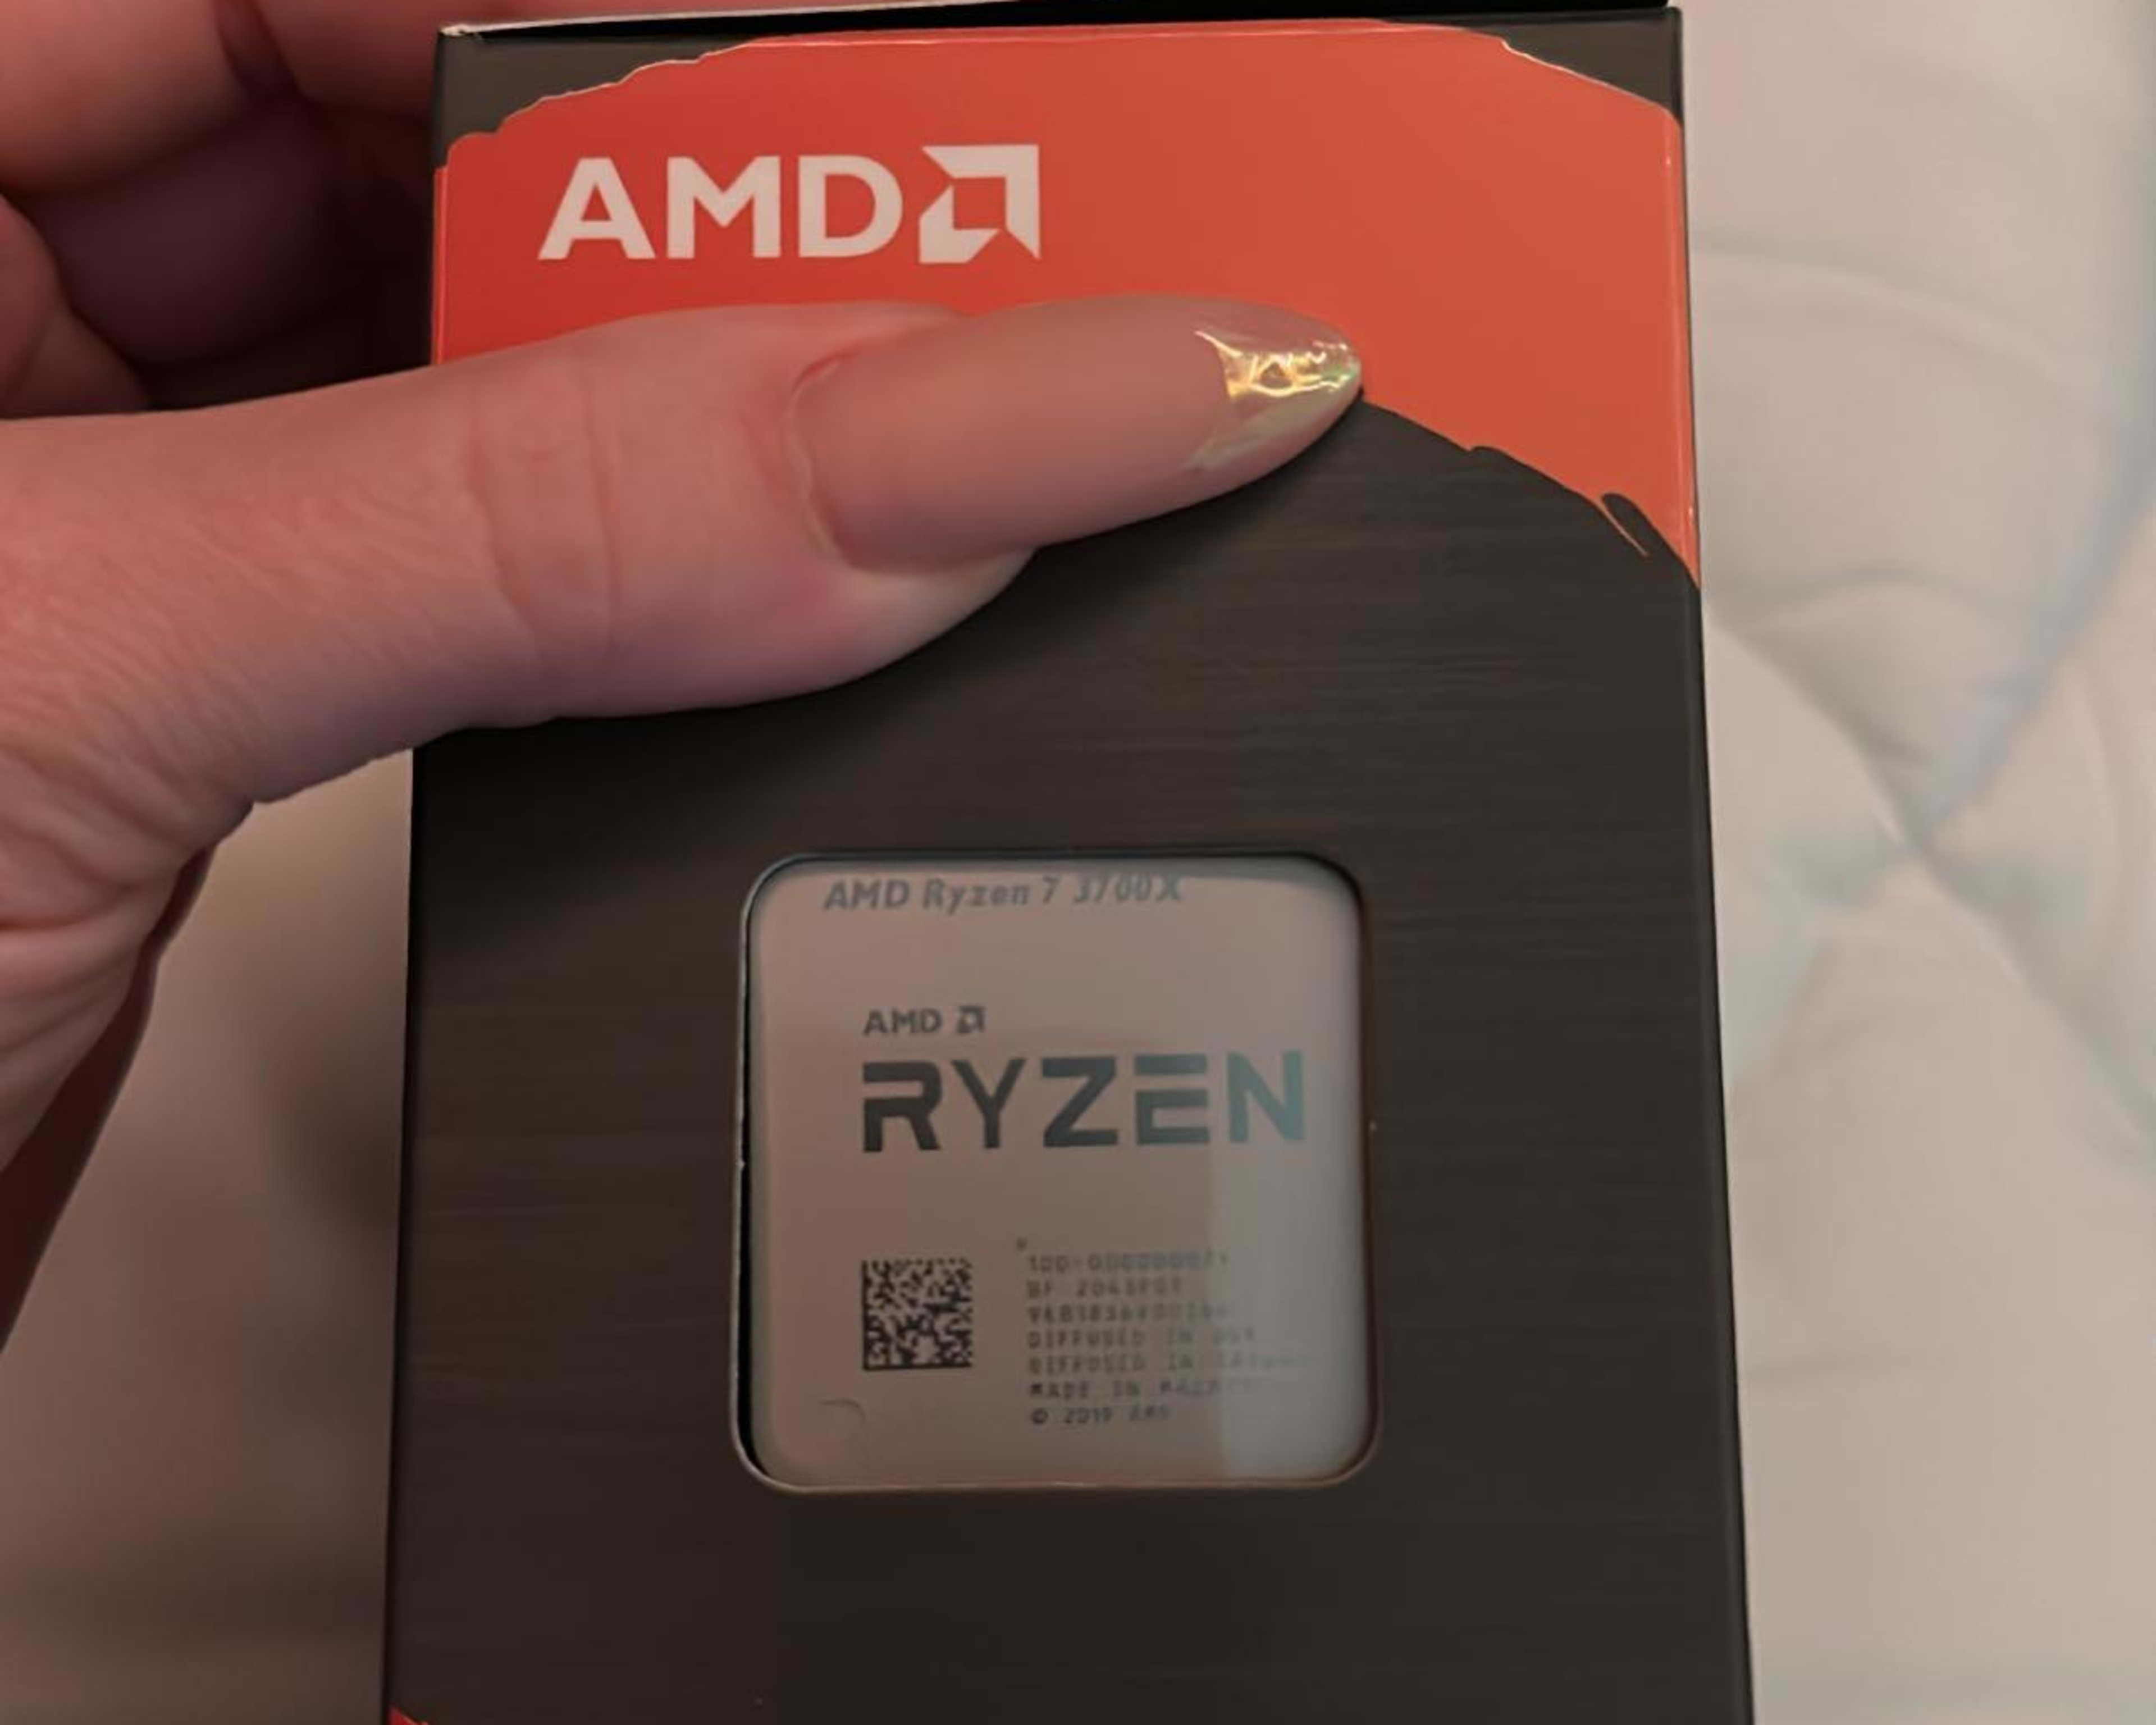 Selling a AMD Ryzen 7 3700X 8-Core 3.6GHz